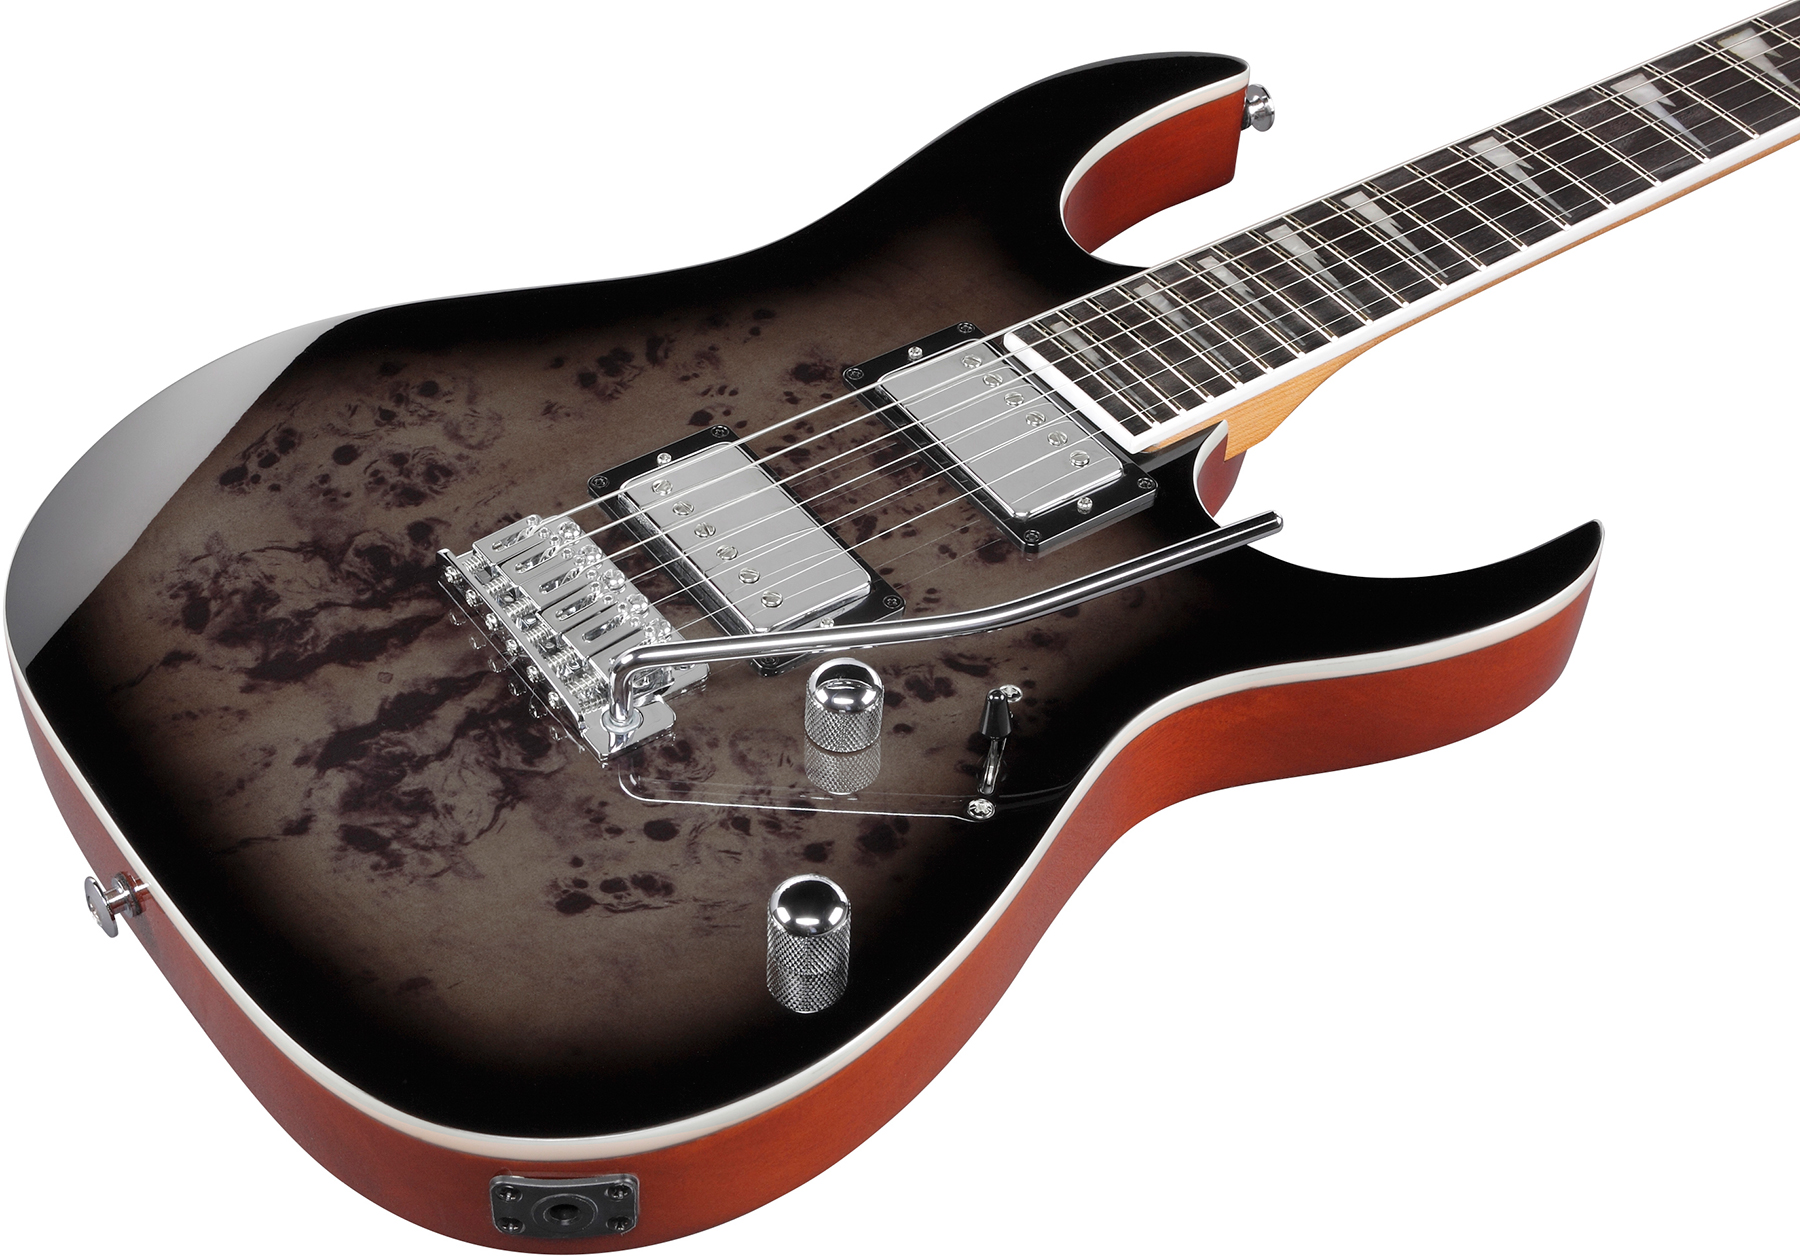 Ibanez Grg220pa1 Bkb Gio 2h Trem Pur - Transparent Brown Black Burst - E-Gitarre in Str-Form - Variation 2